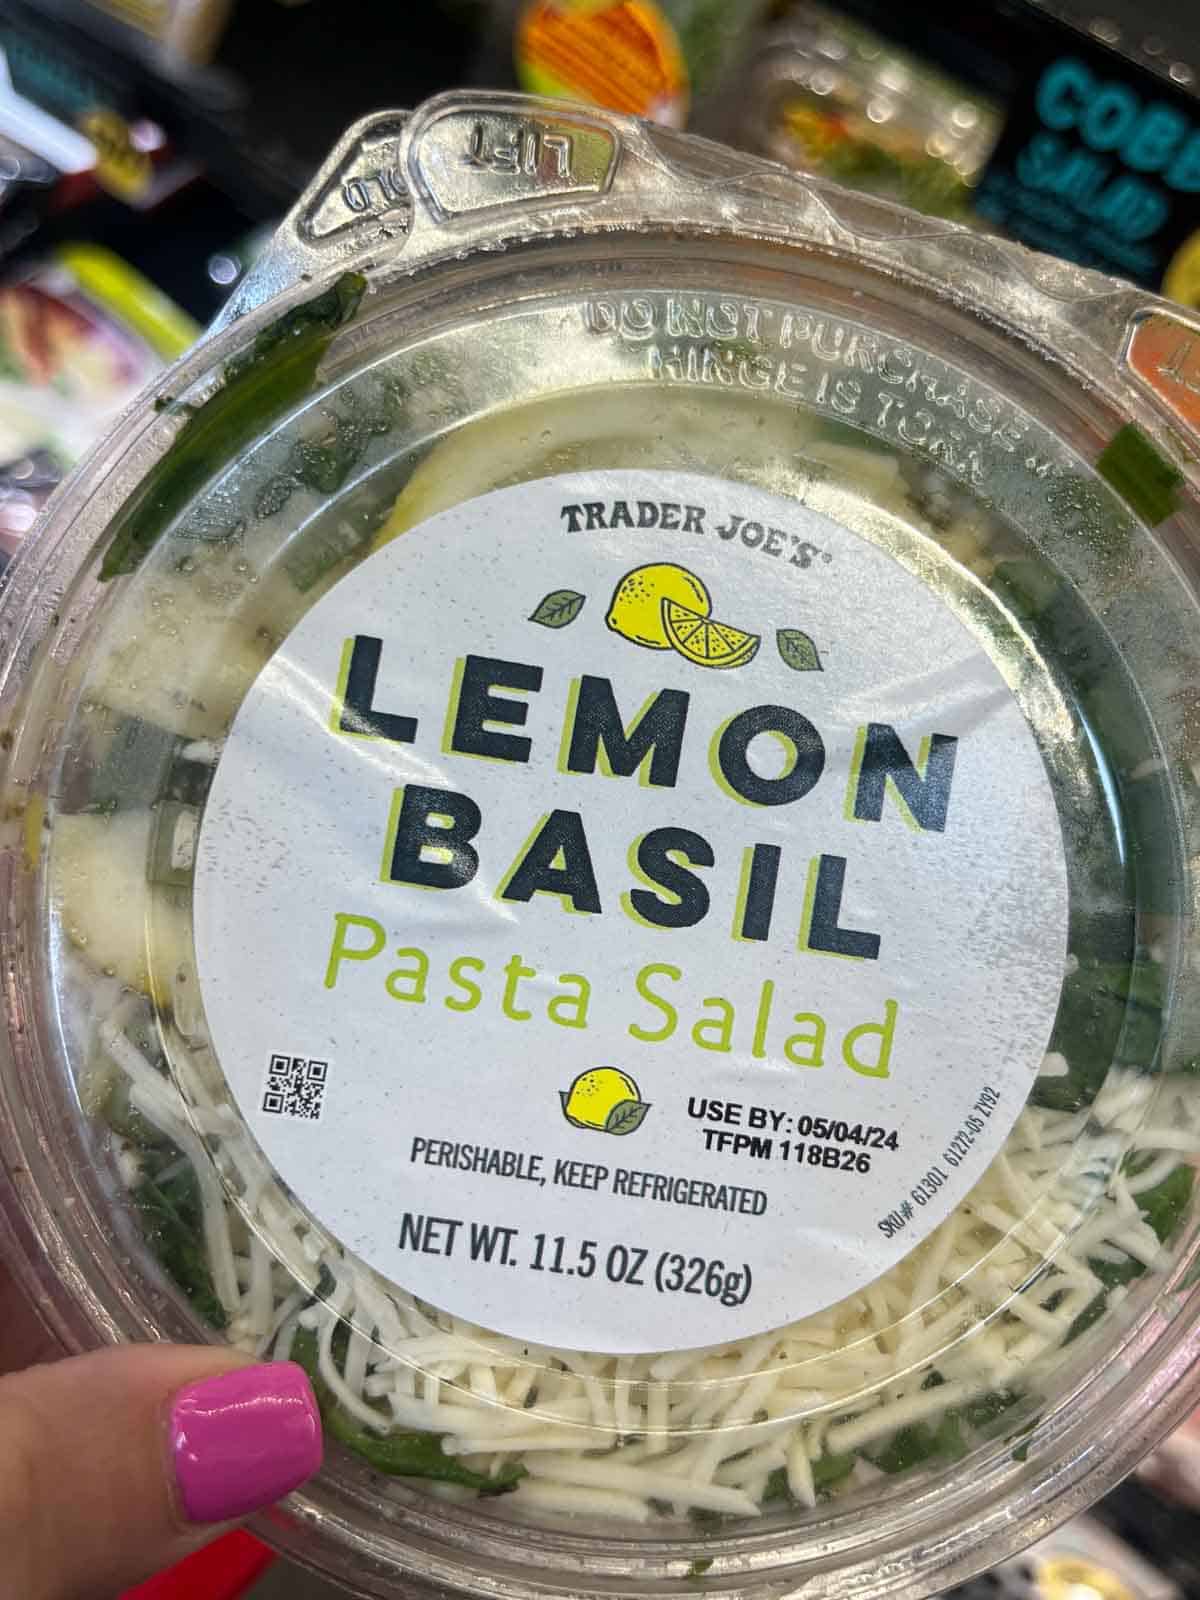 A container of Trader Joe's lemon basil pasta salad.